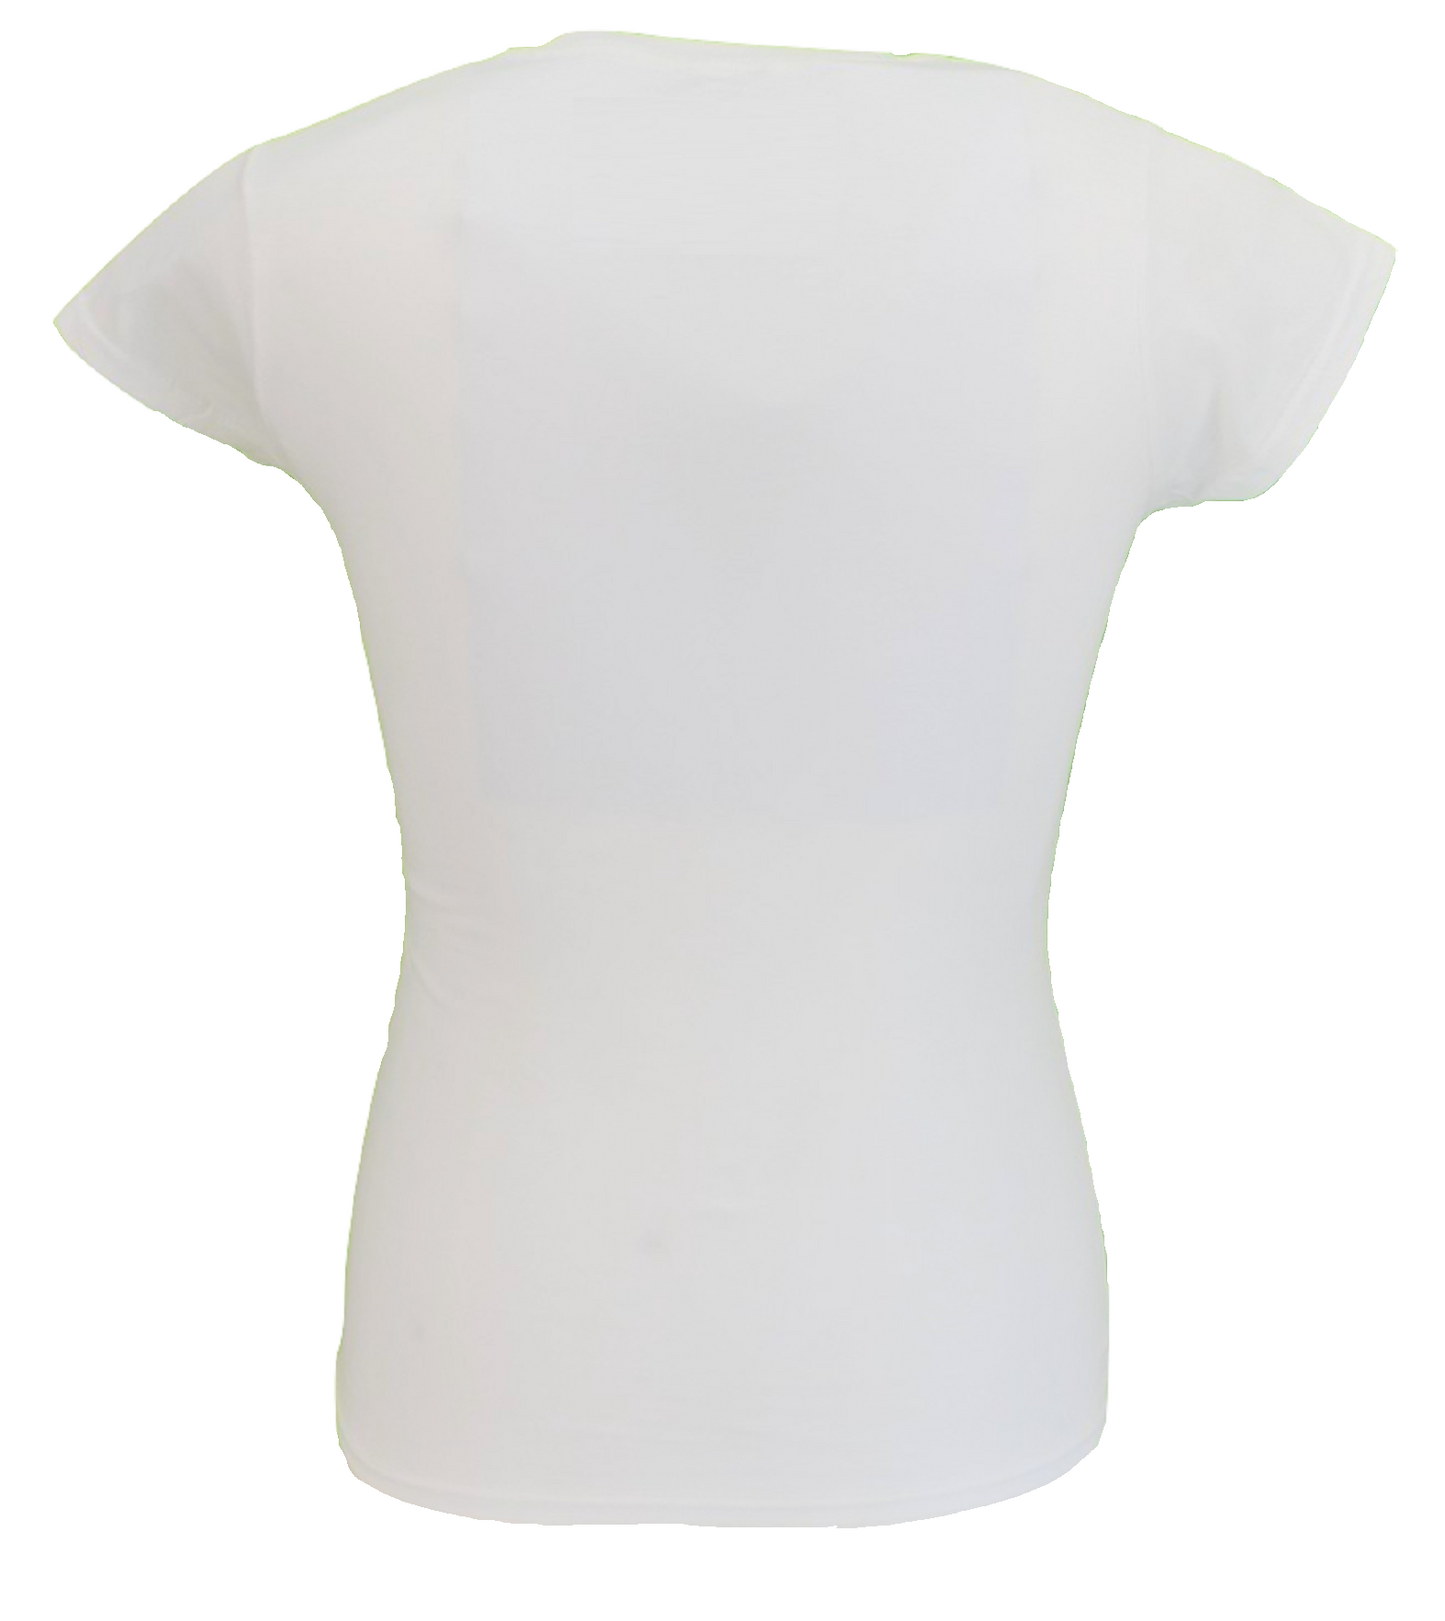 T-shirt blanc vintage pour femmes, sous licence officielle, Who, cible